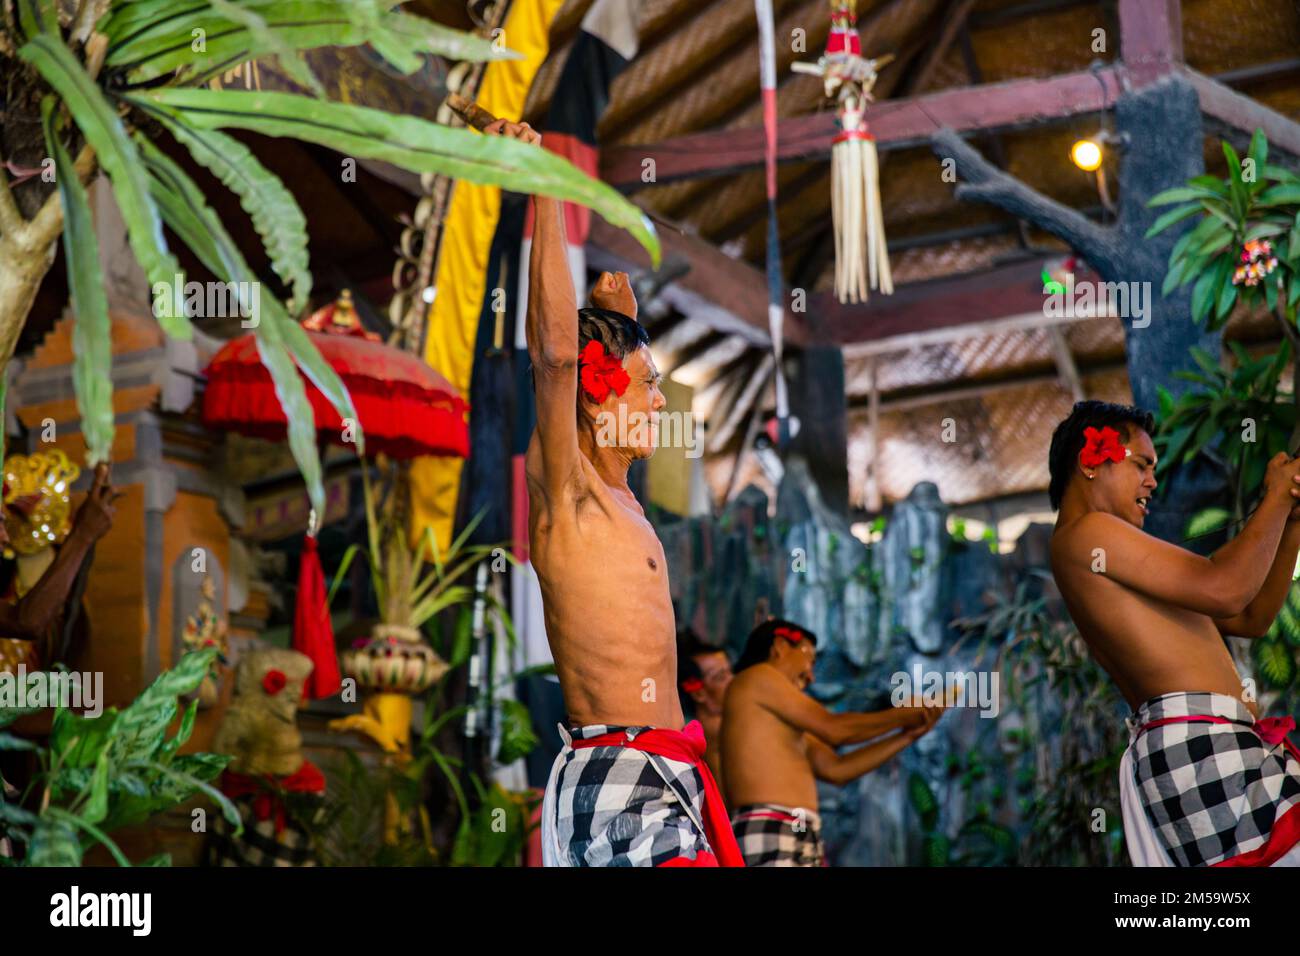 Bali - Indonesien - 10.22.2015: Ein balinesischer Bühnenspieler, der in farbenfroher traditioneller Kleidung auftritt und einen Dolch hält Stockfoto